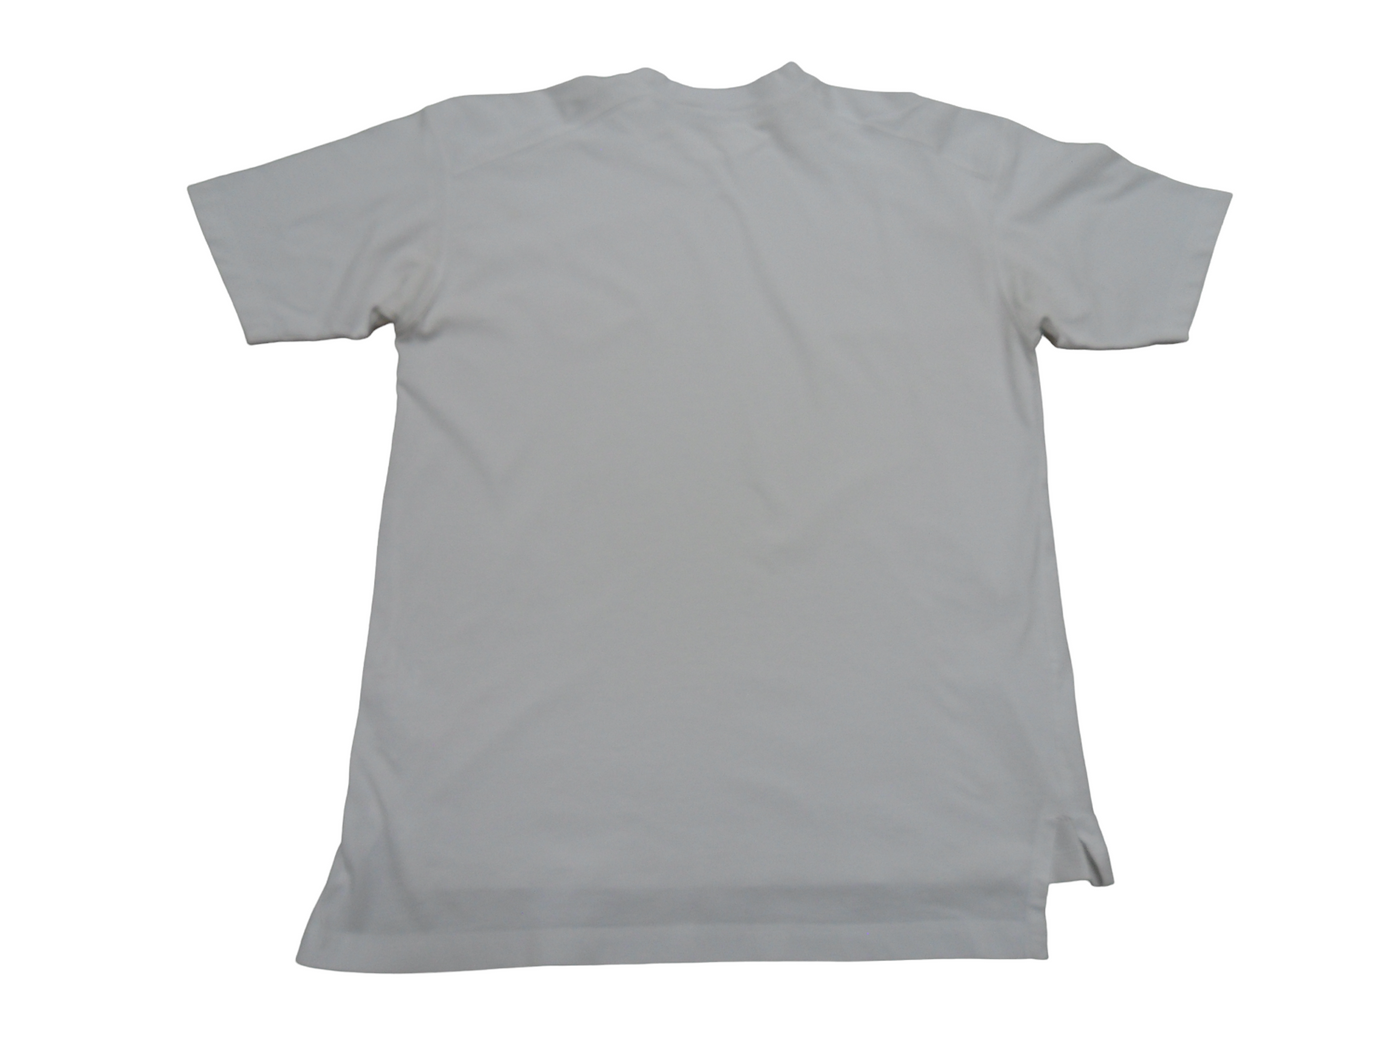 Vintage Claiborne Men's White T-Shirt Size - L